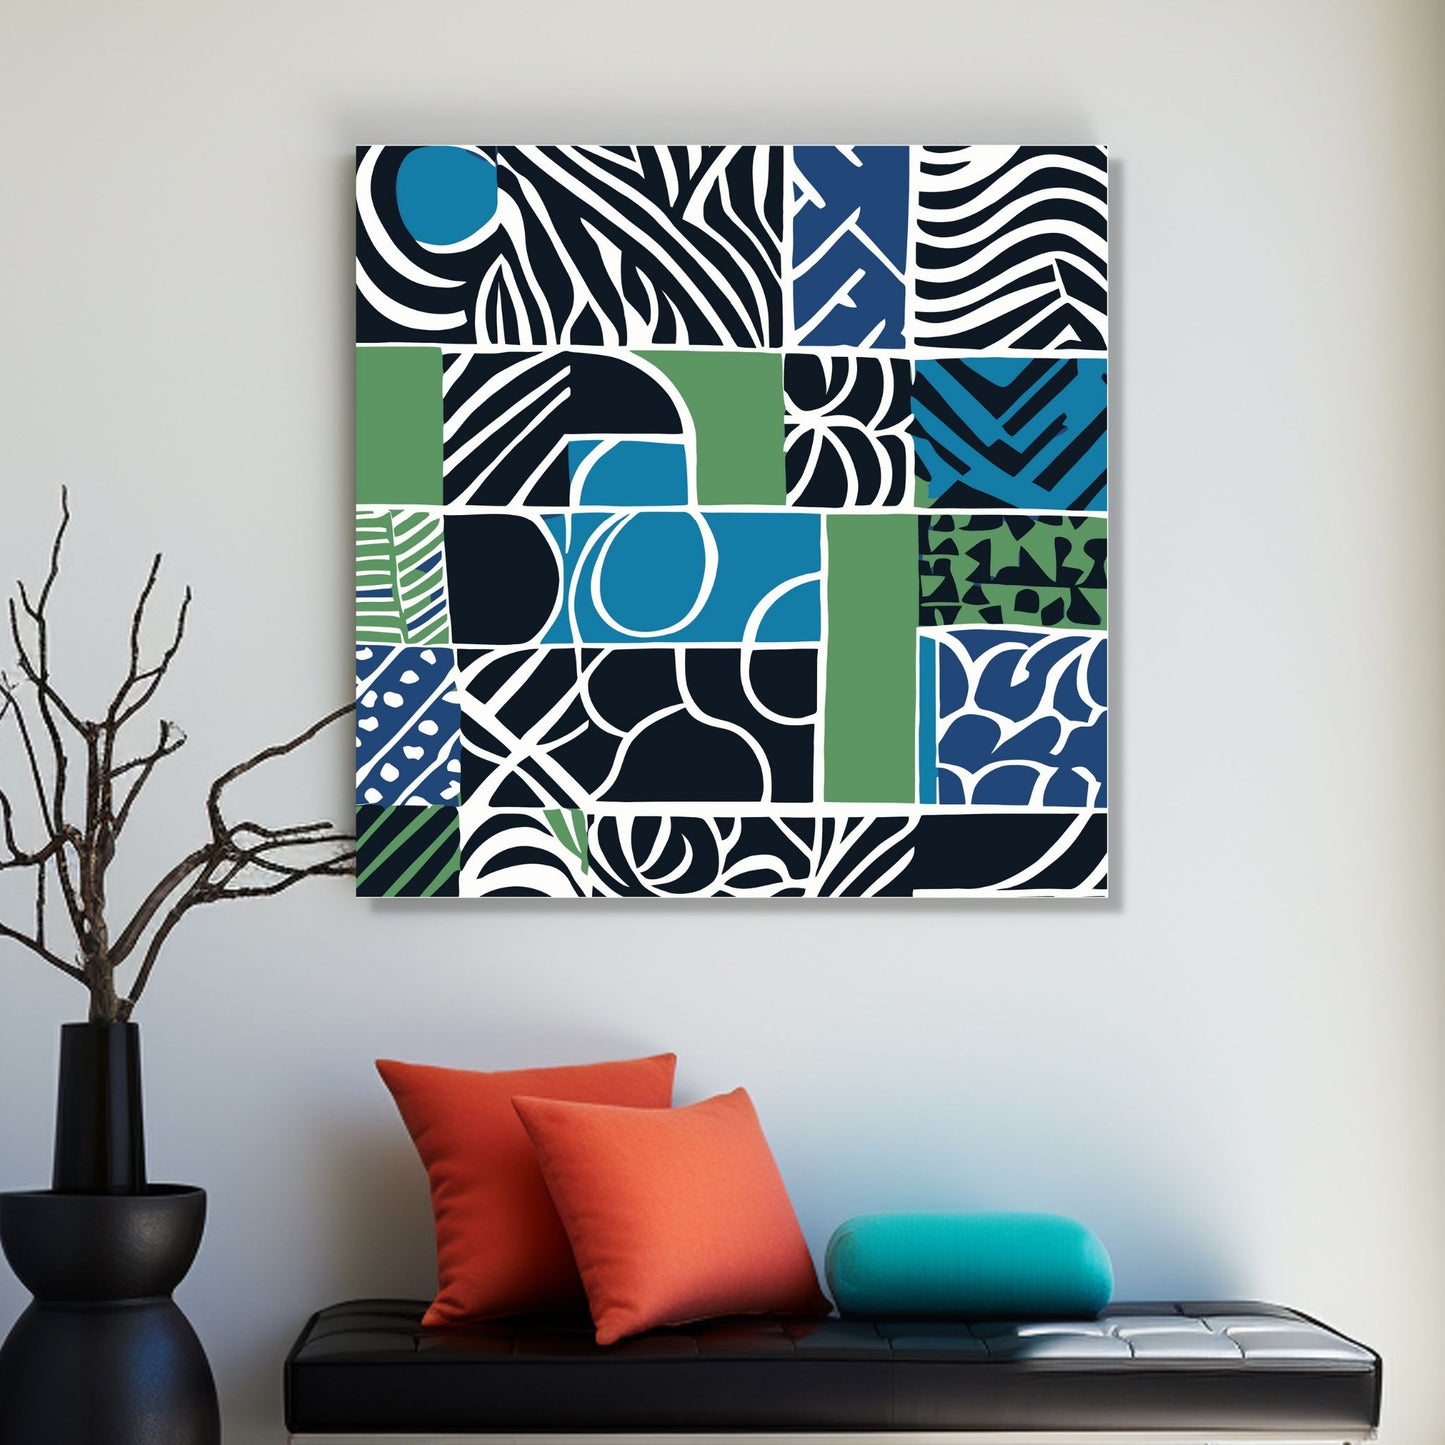 Kvadratisk plakat med abstrakt mønster i fargene blå, grønn, sort og hvit. Her henger motivet på lerret.